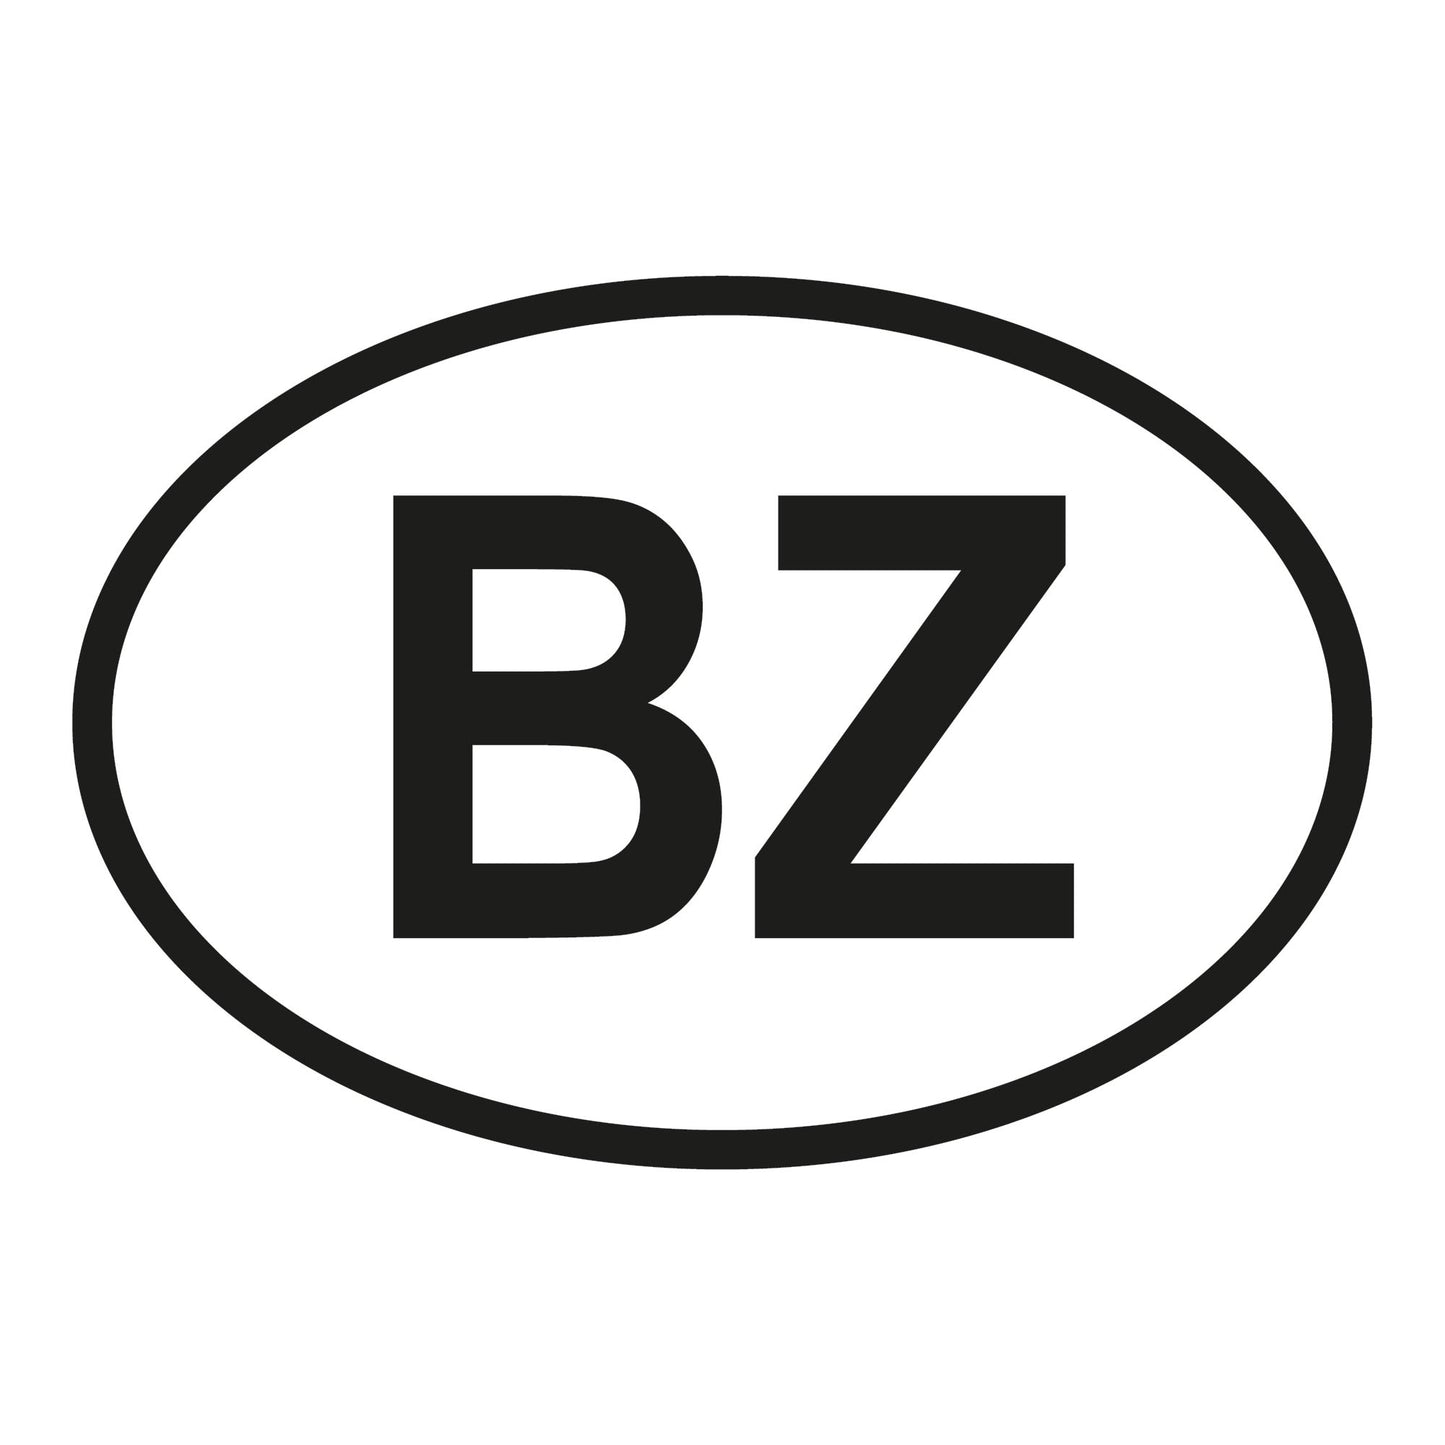 Autoaufkleber - Belize BZ - 160x110mm